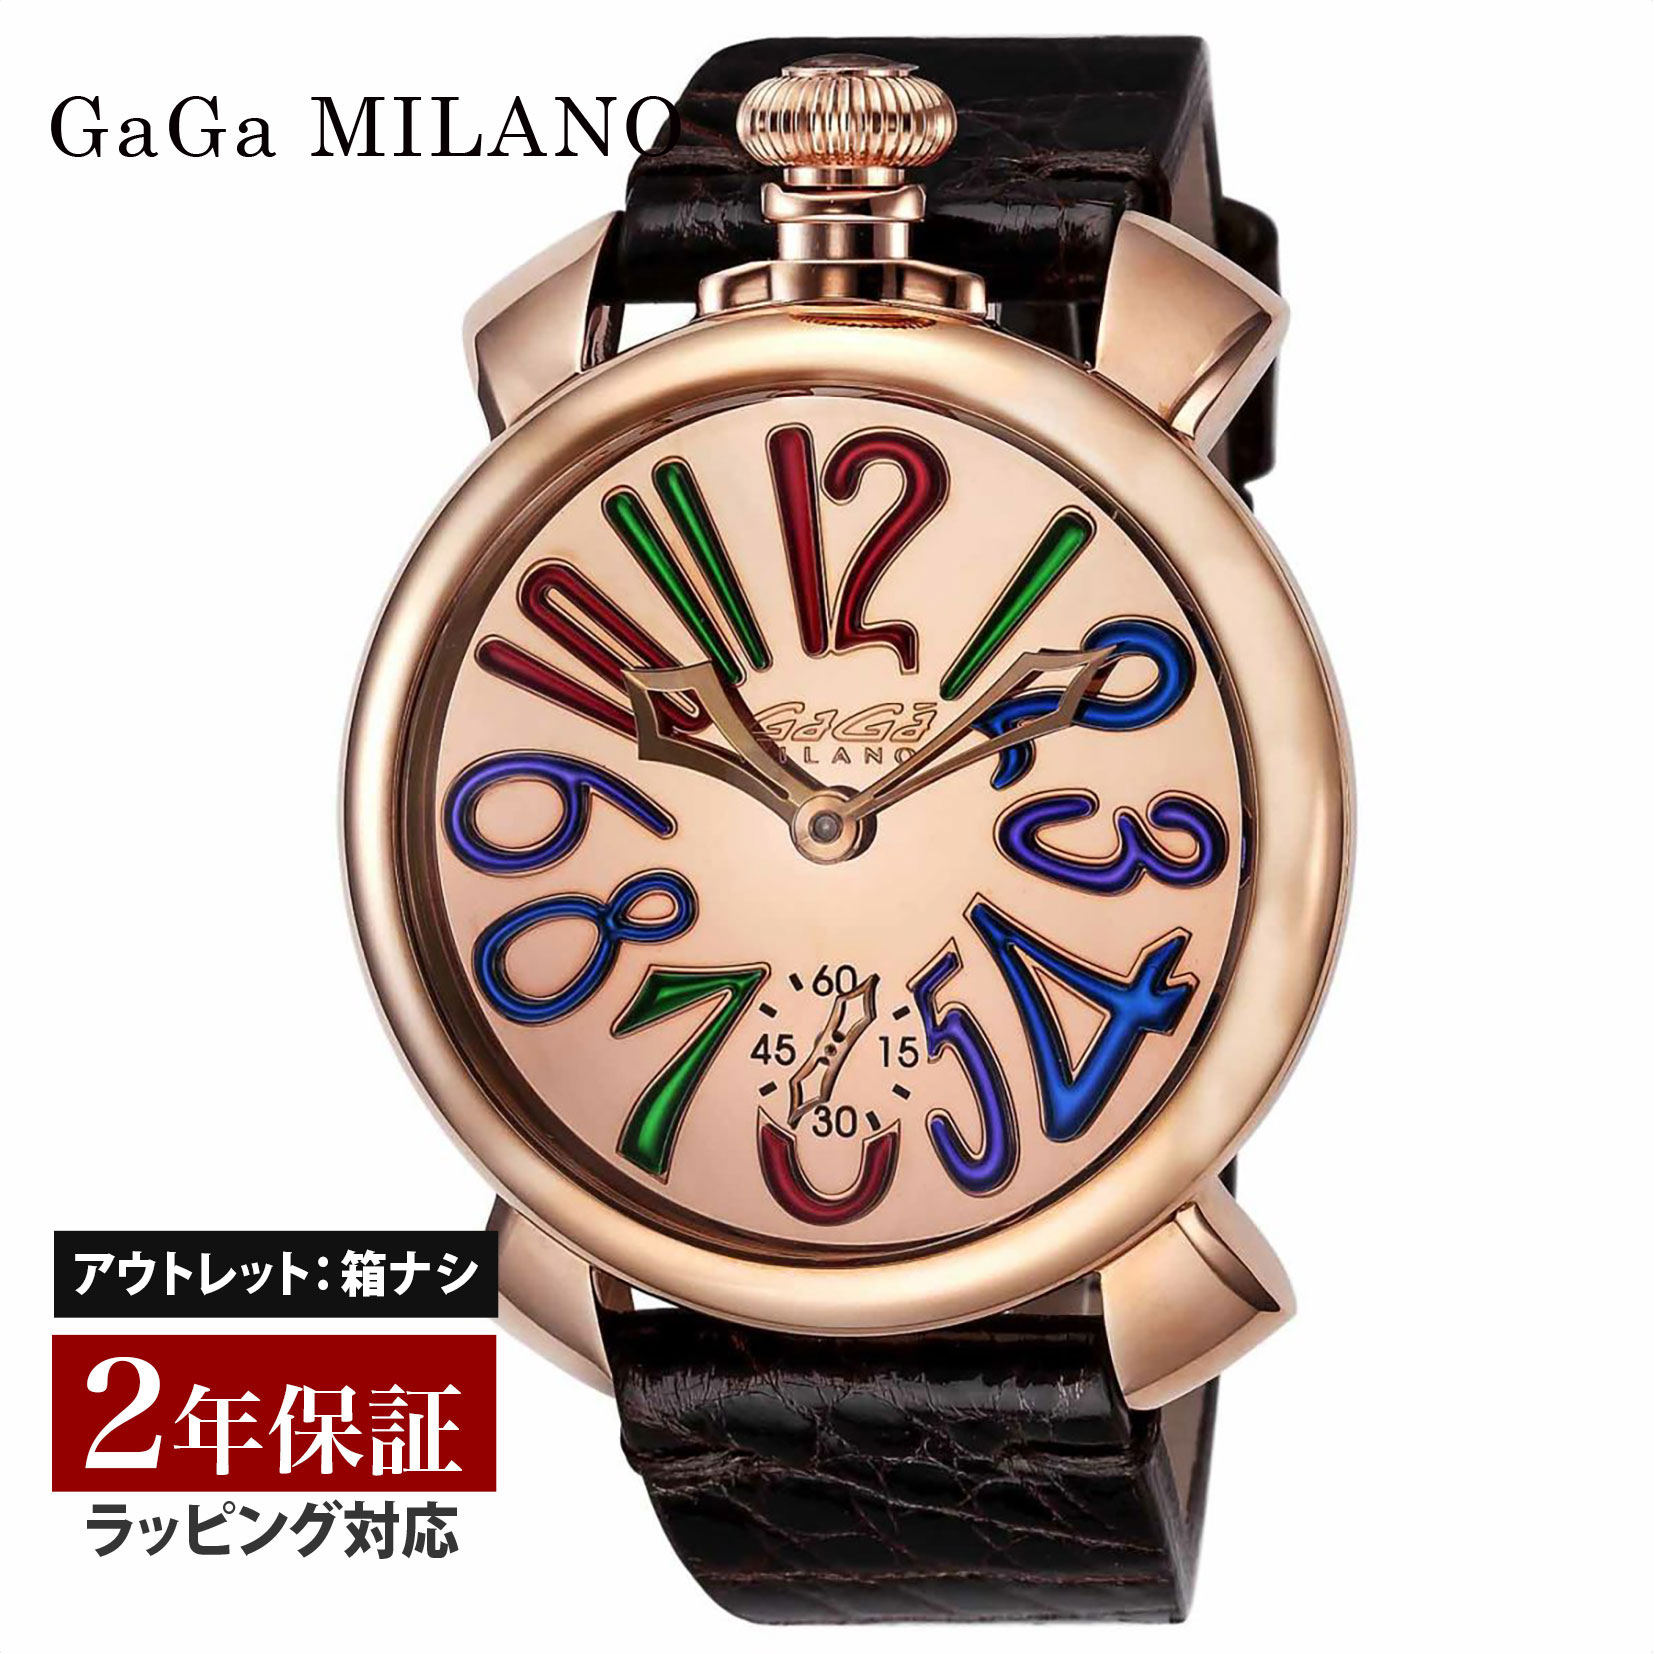 【クリアランスSALE】 GaGaMILAN ガガミラノ メンズ スイス製 ガガ ミラノ オートマ ゴールド 5211.MIR02S 腕時計 高級腕時計 ブランド 